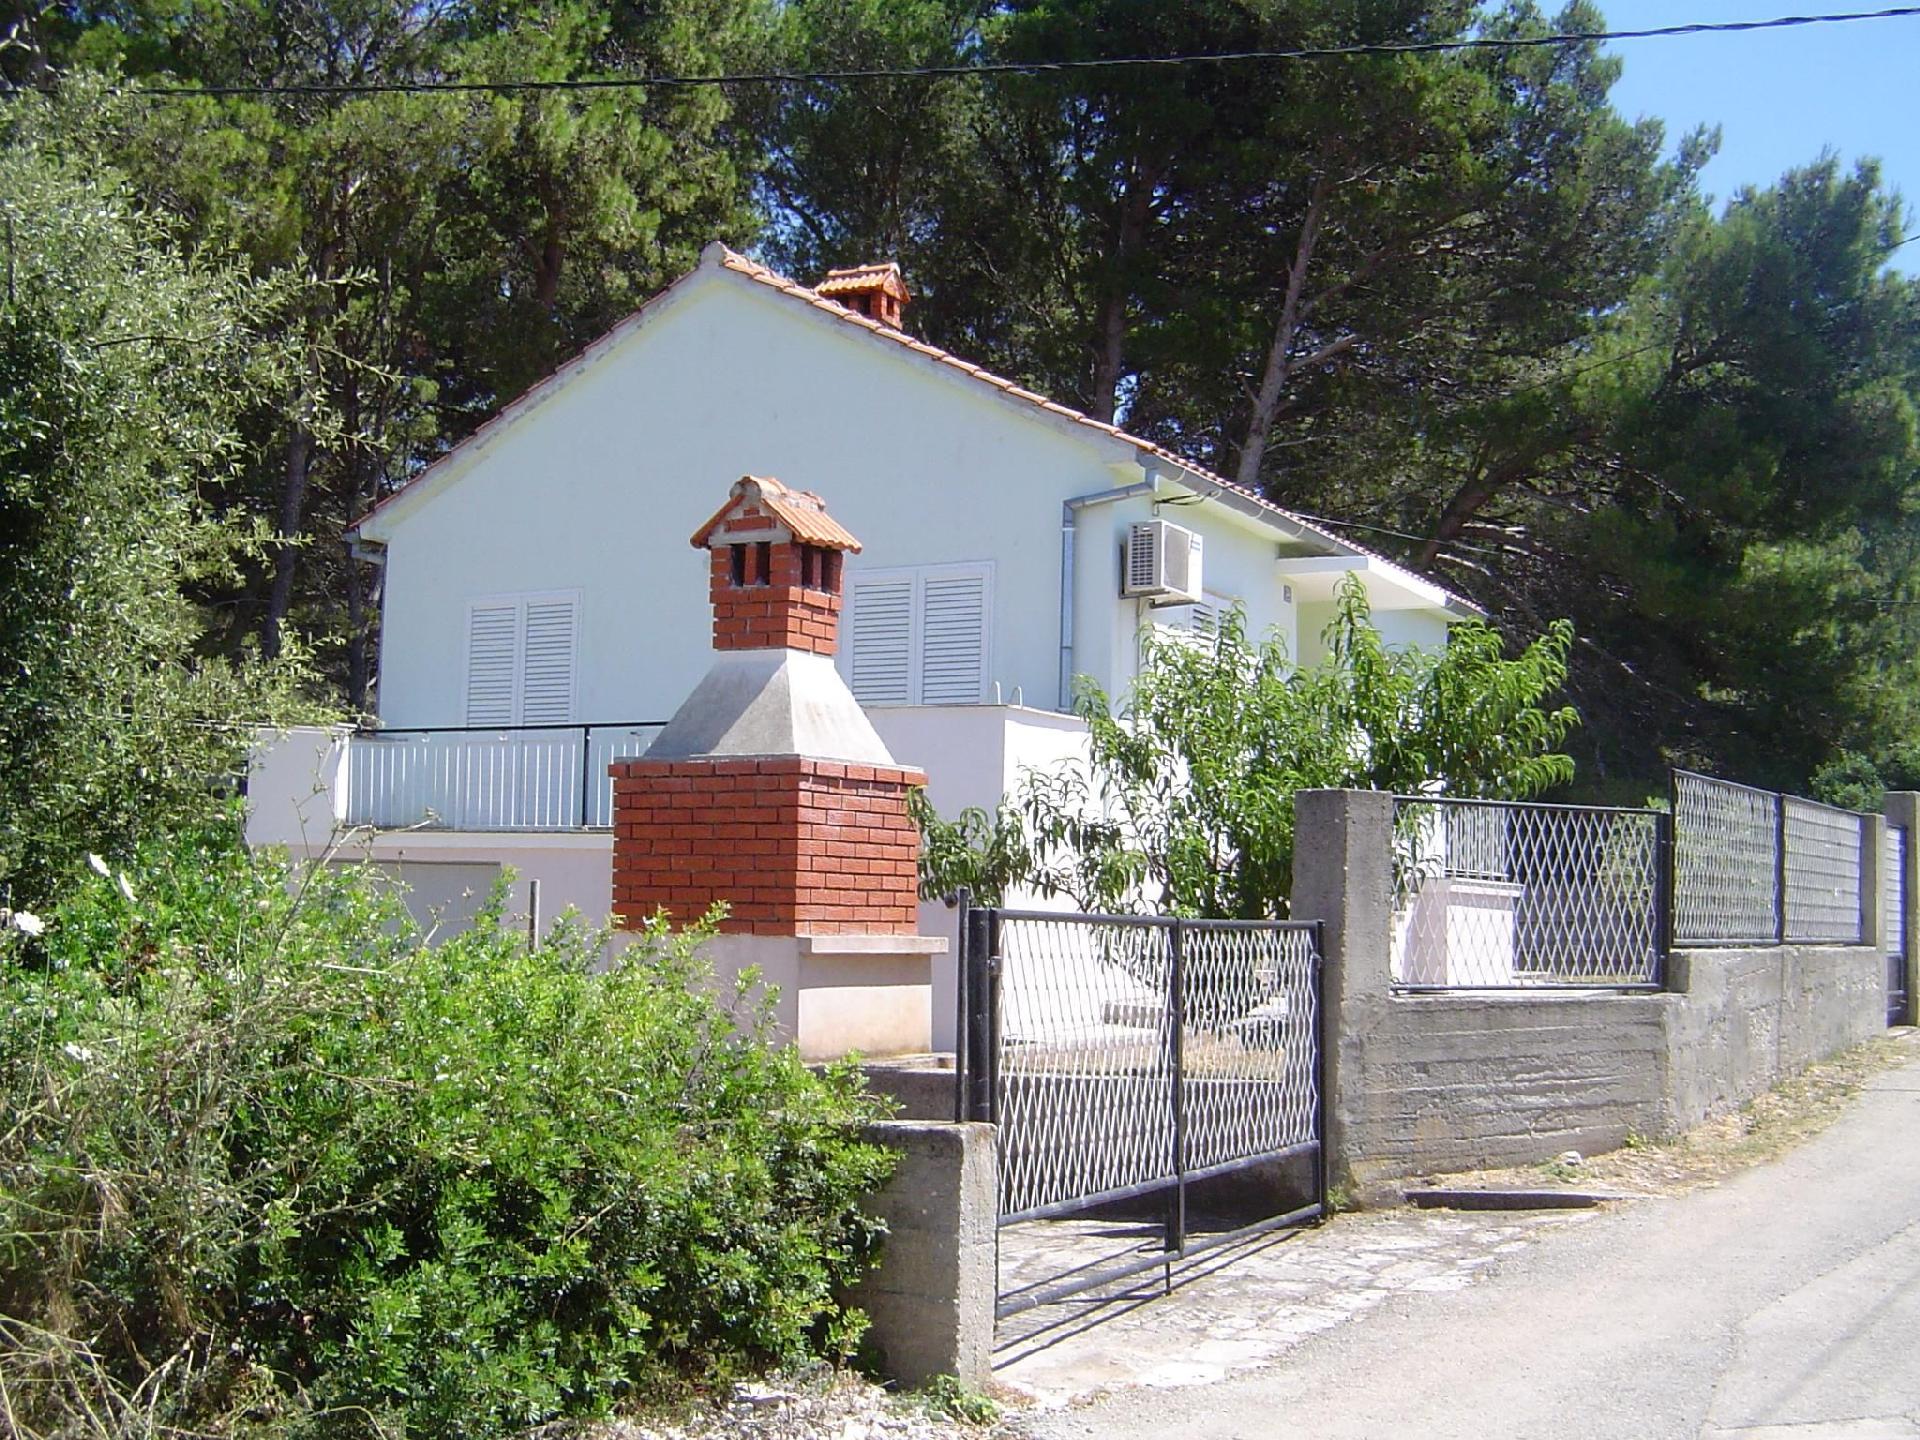 Ferienhaus in Ugljan mit Terrasse, Garten und Gril Ferienhaus in Kroatien